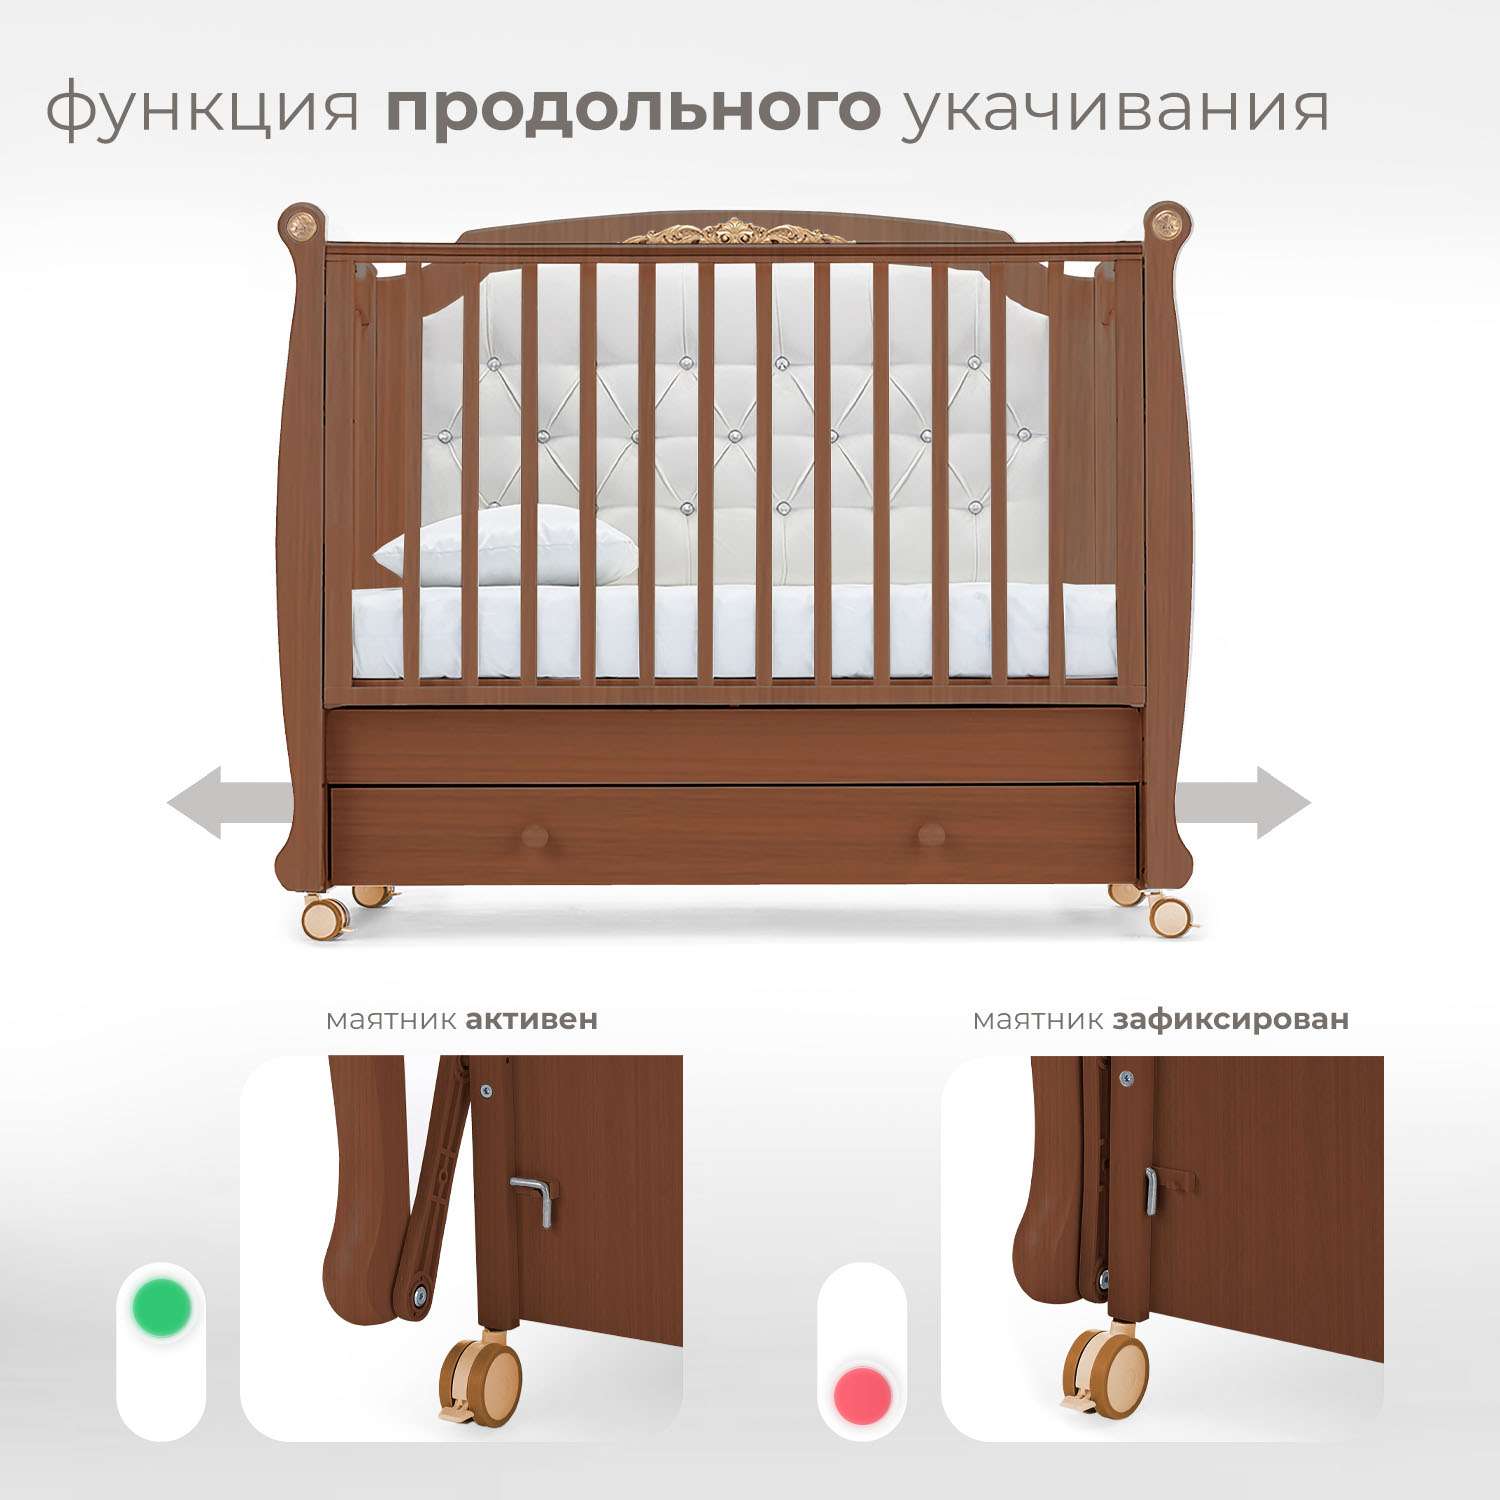 Детская кроватка Nuovita Furore Swing прямоугольная, продольный маятник (темный орех) - фото 4